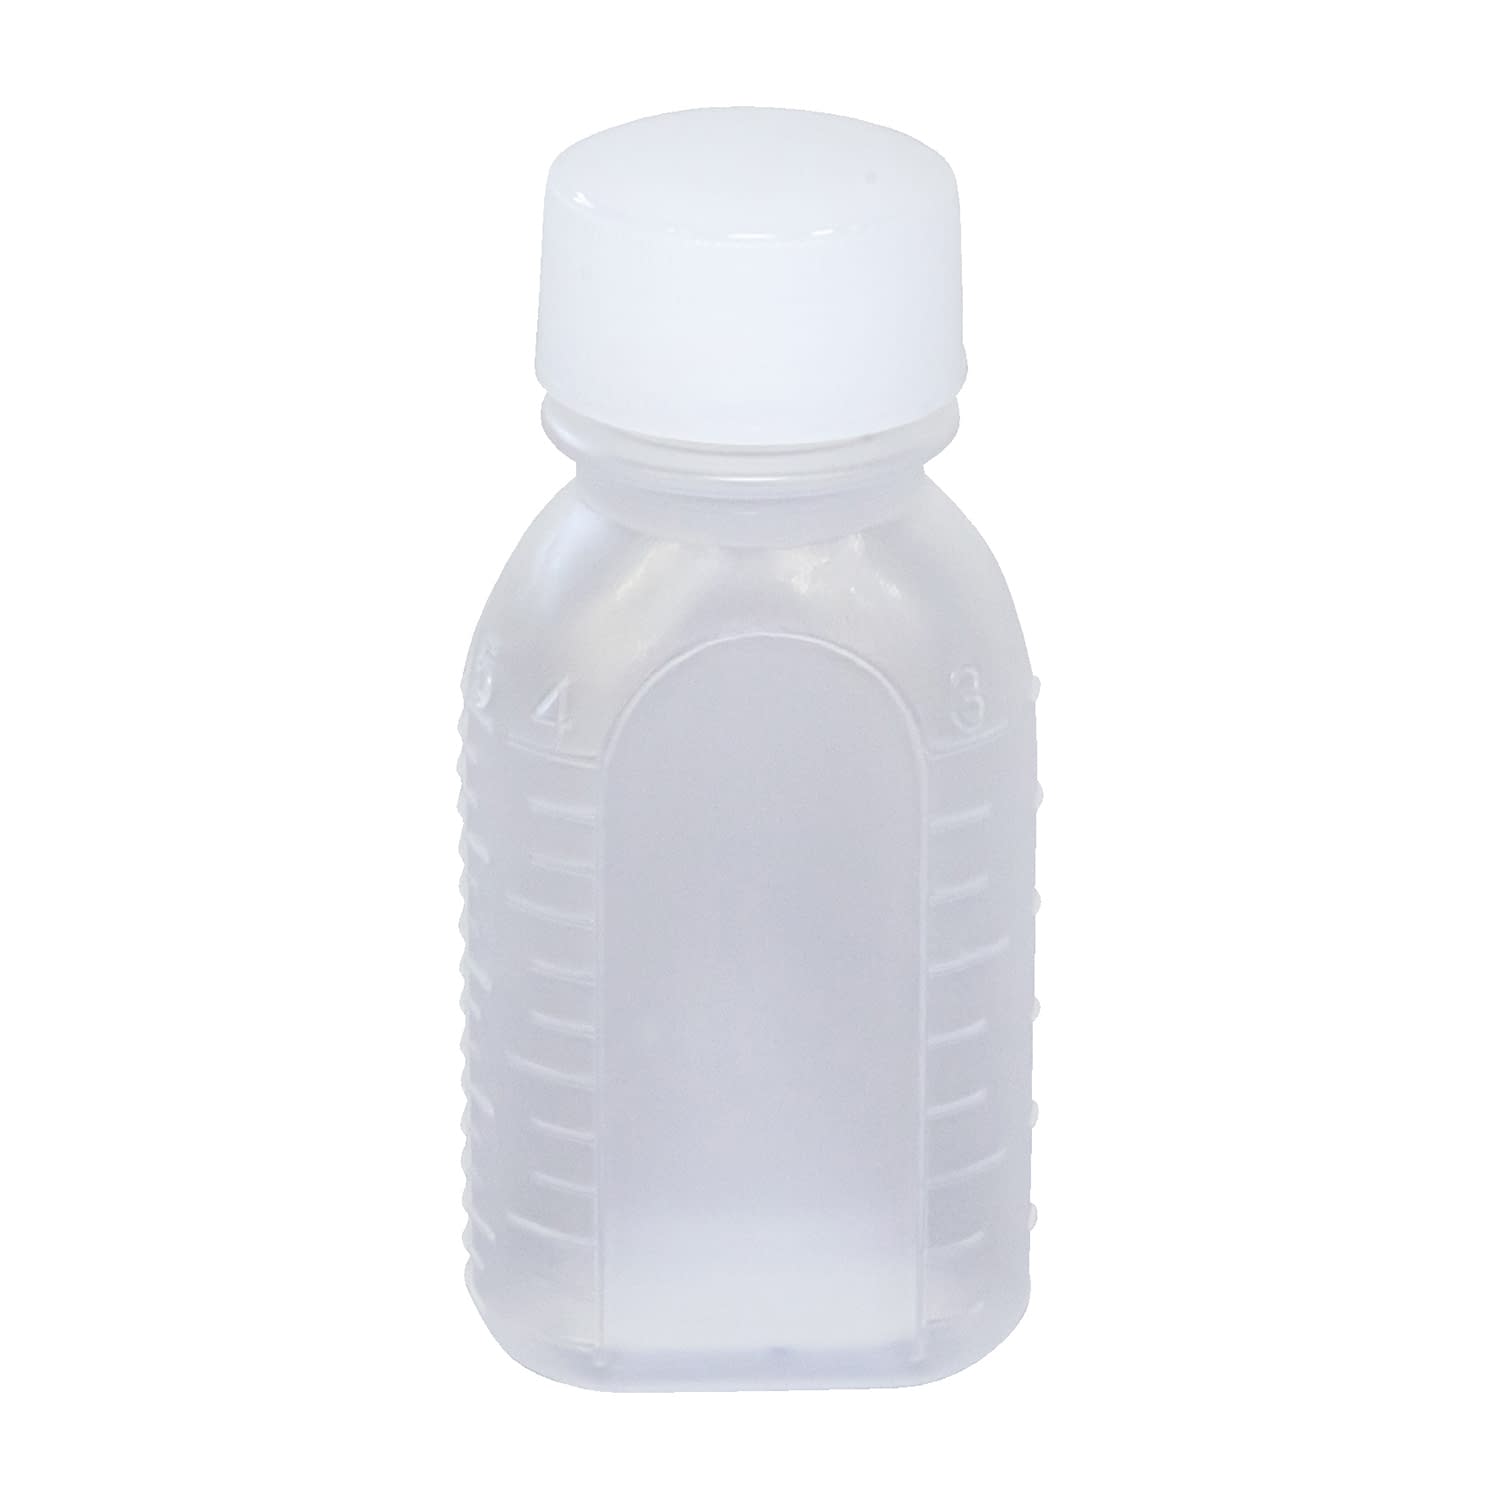 投薬瓶ＰＰＢ（滅菌済） 30CC(20ﾎﾟﾝX25ﾌｸﾛｲﾘ) キャップ：白ＰＰ30cc白・PP【エムアイケミカル】FALSE(08-2855-01-06)